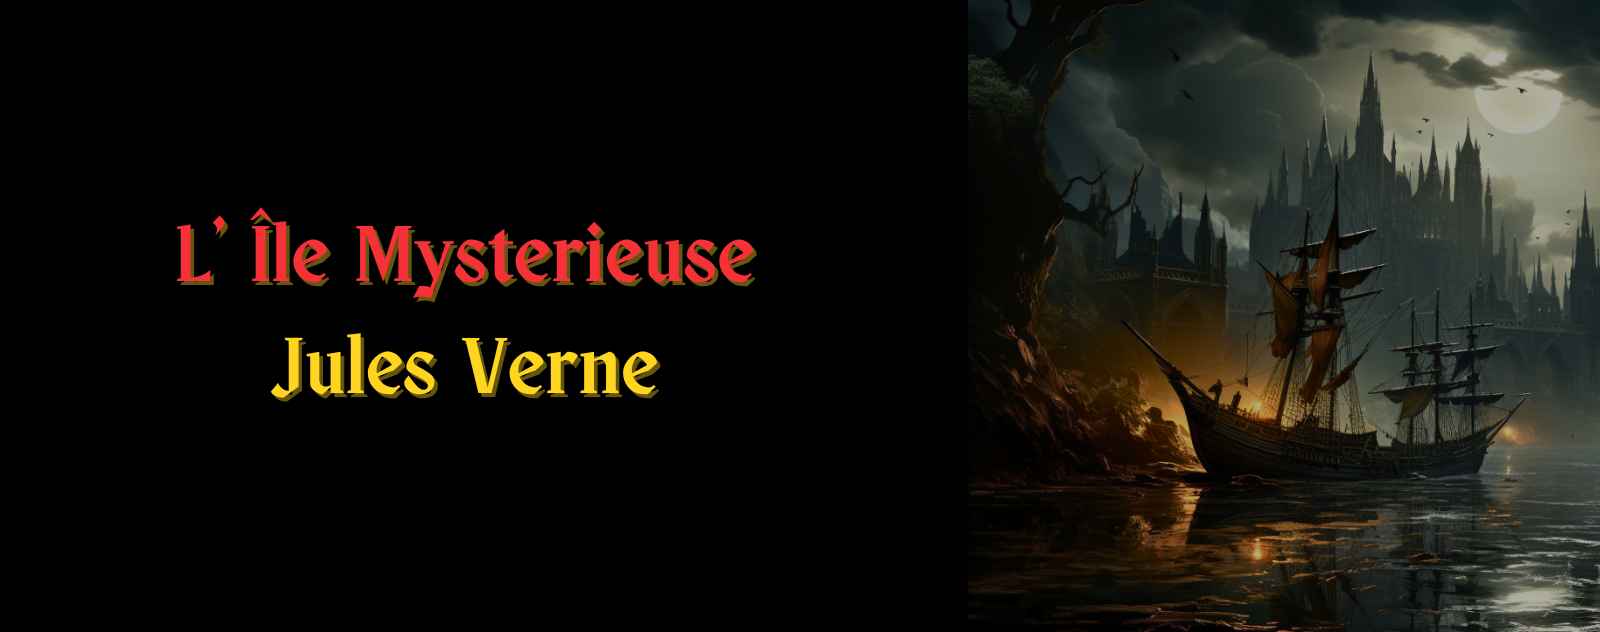 L' Île Mysterieuse par Jules Verne